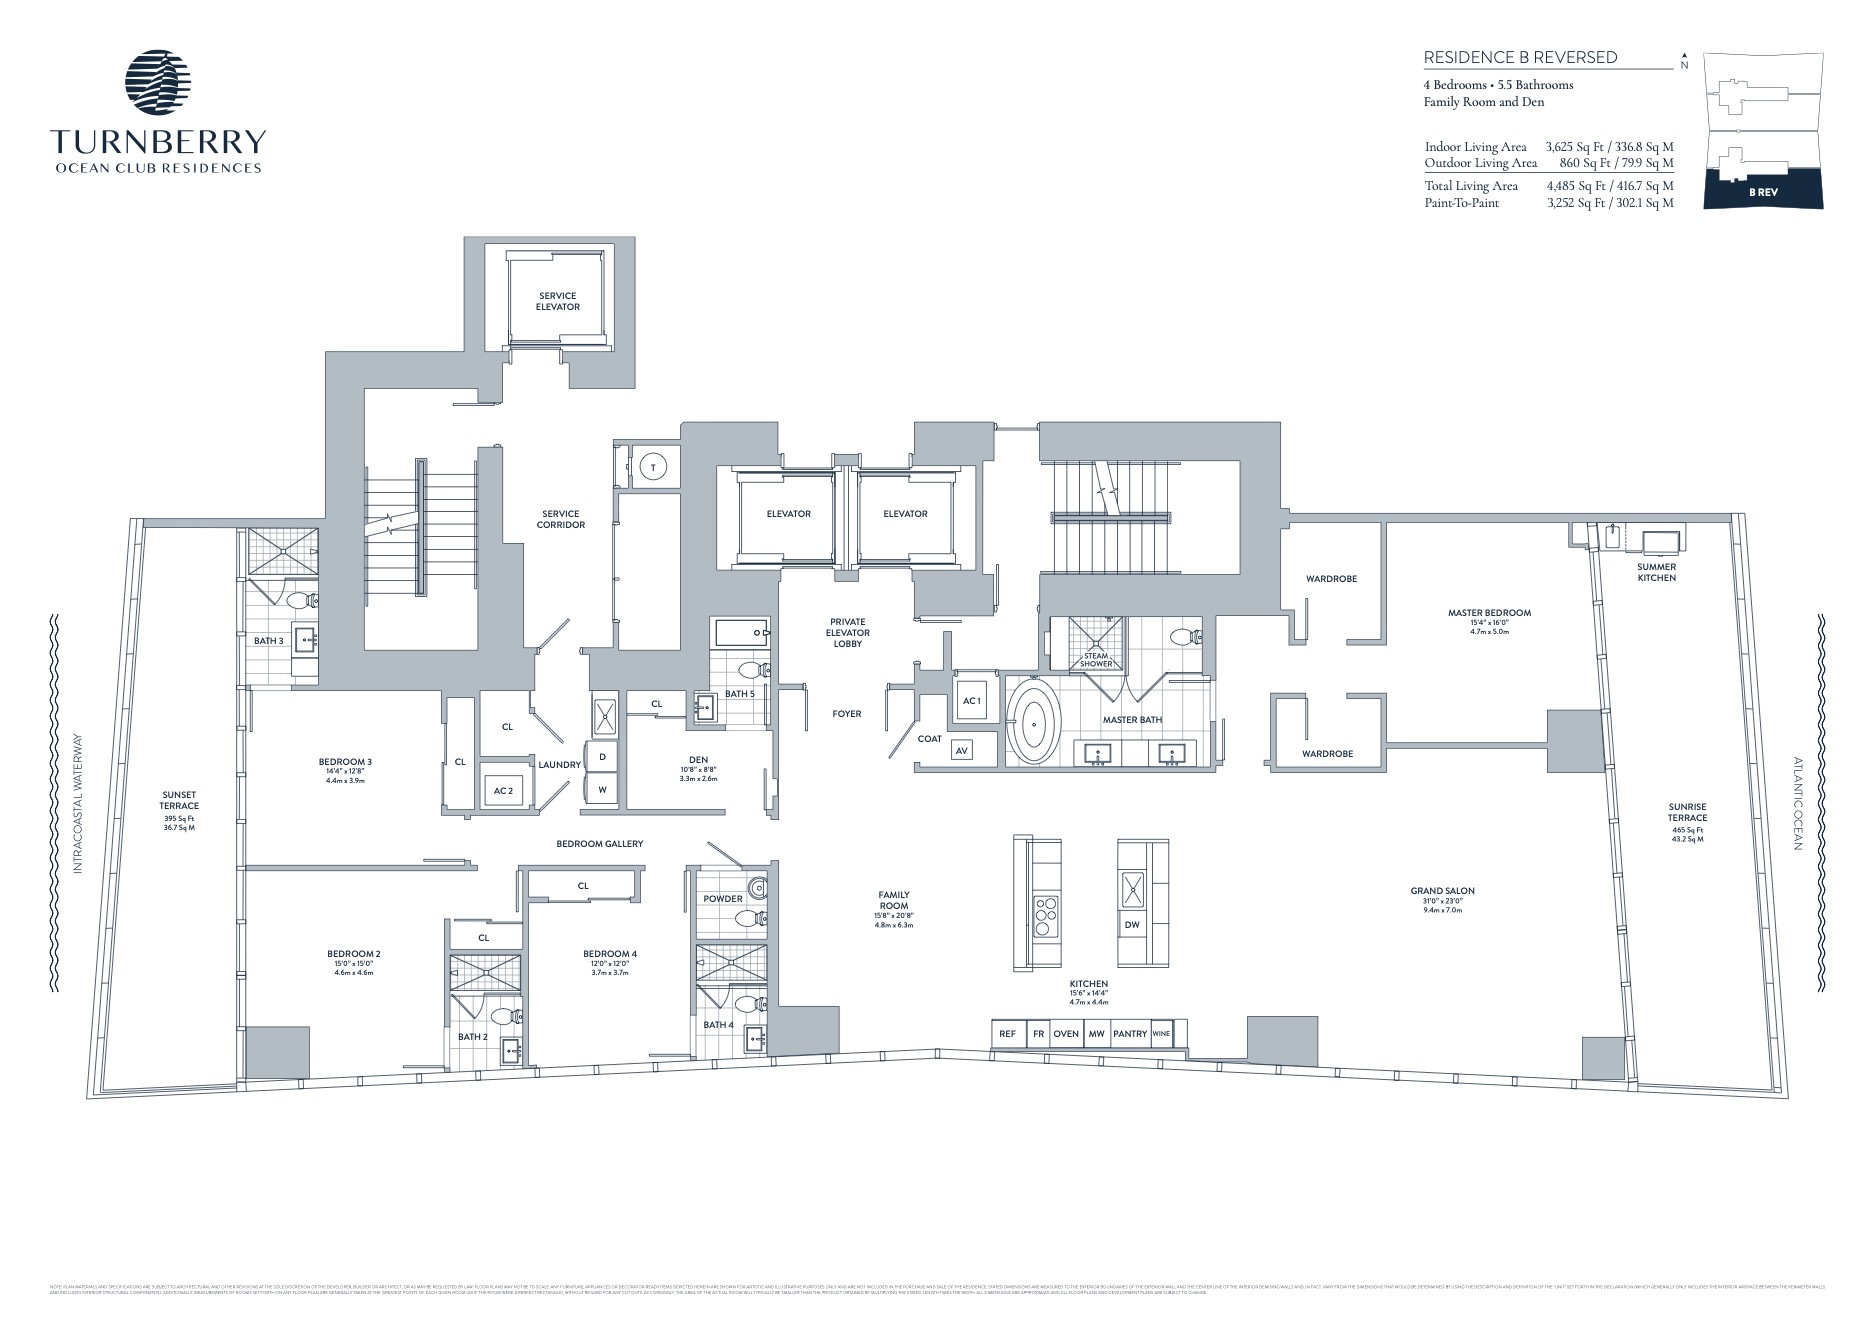 Floor Plan for Turnberry Sunny Isles Floorplans, Residence B Reversed